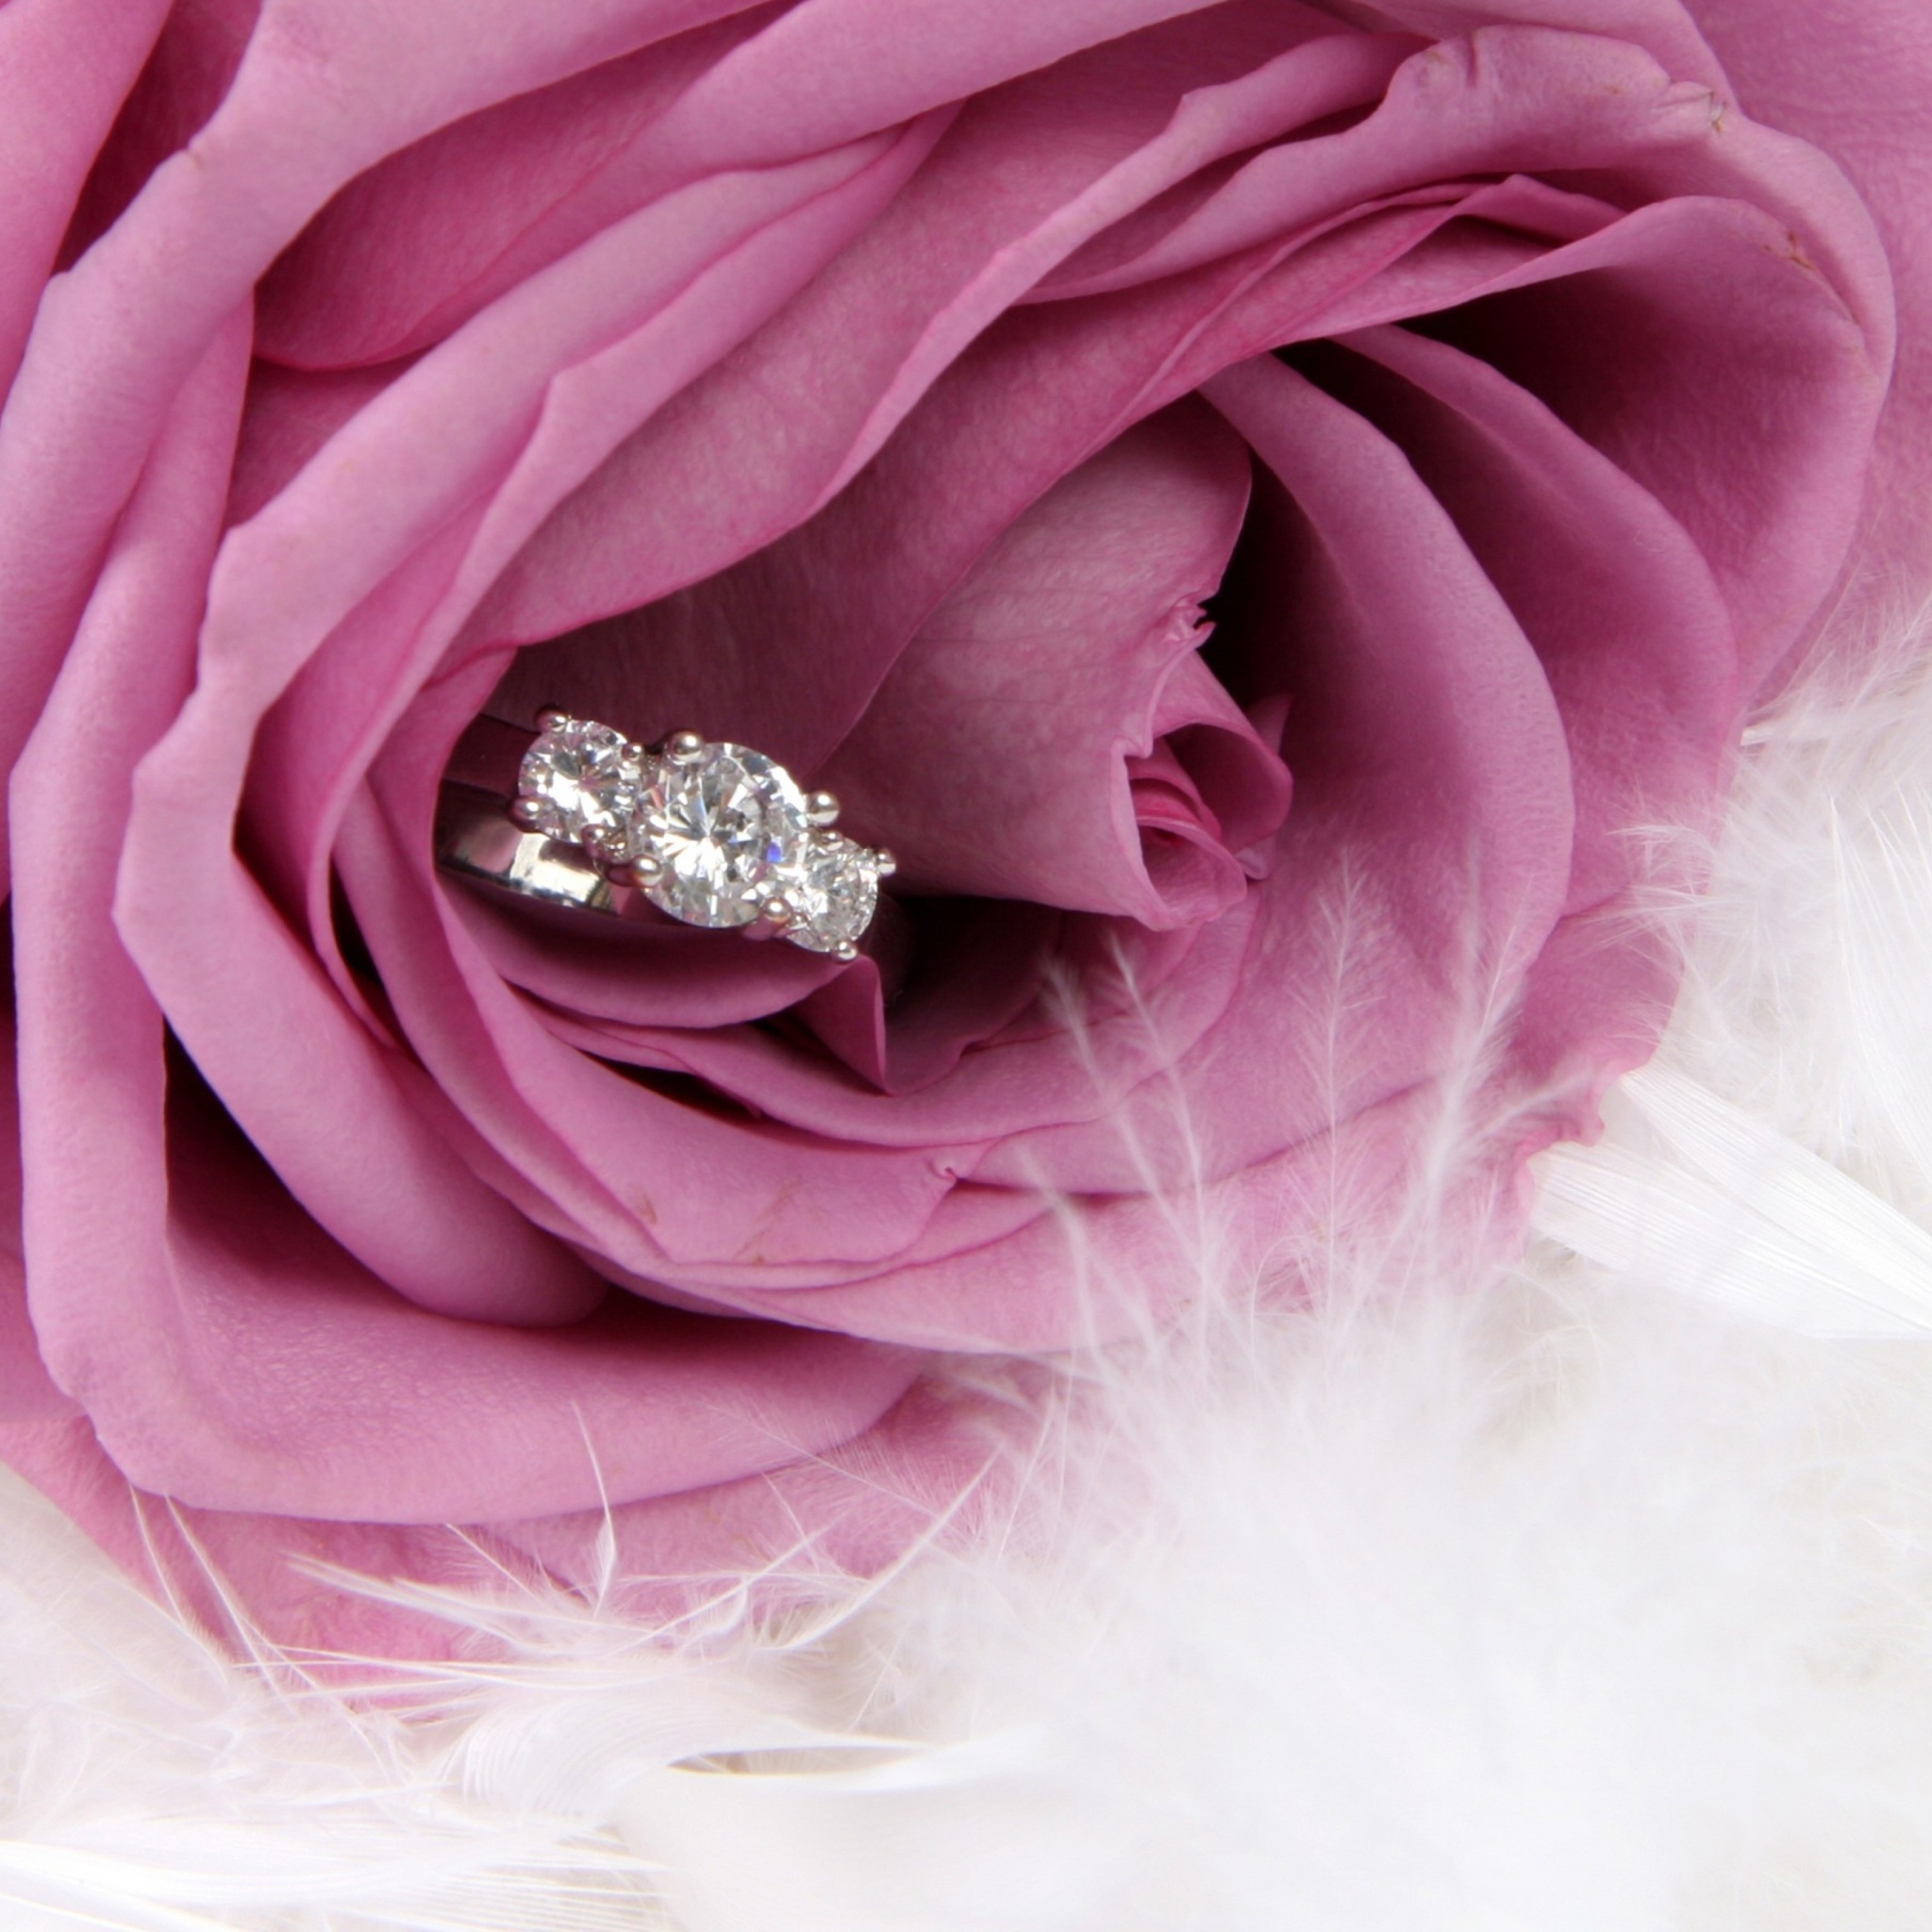 Engagement Ring In Pink Rose screenshot #1 2048x2048